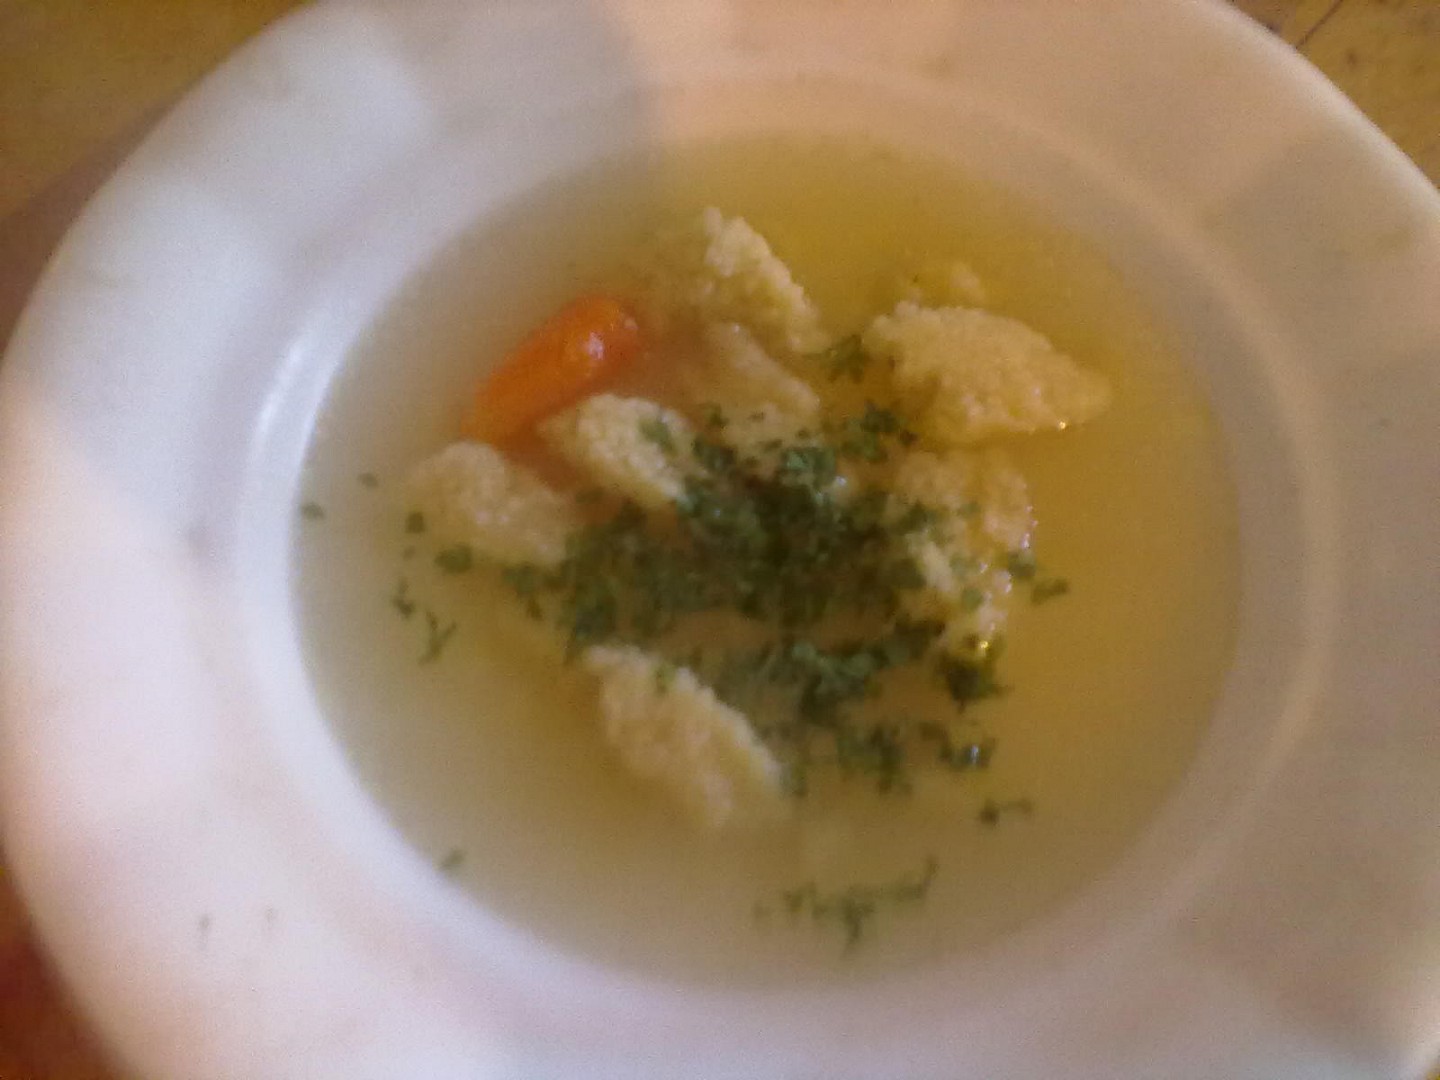 Polévka z hovězí oháňky ze „Šlajfu“